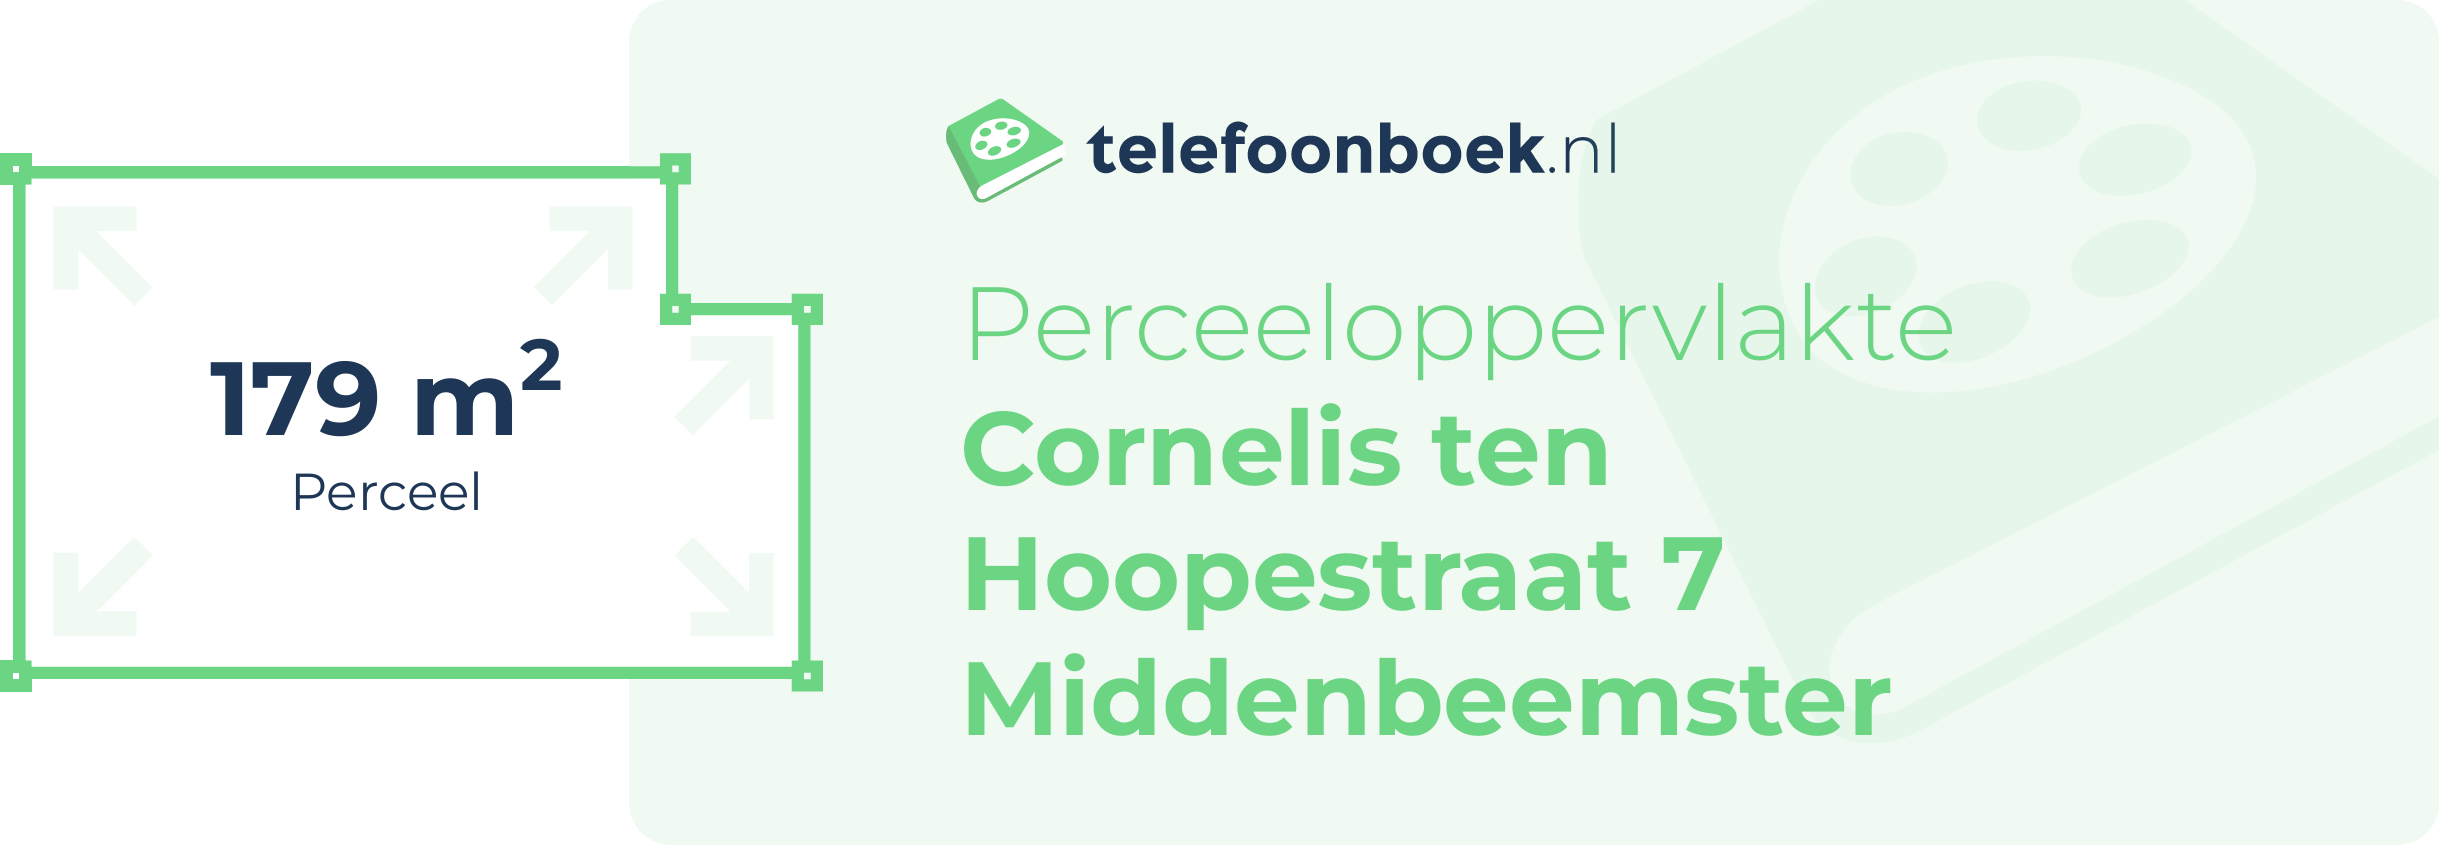 Perceeloppervlakte Cornelis Ten Hoopestraat 7 Middenbeemster